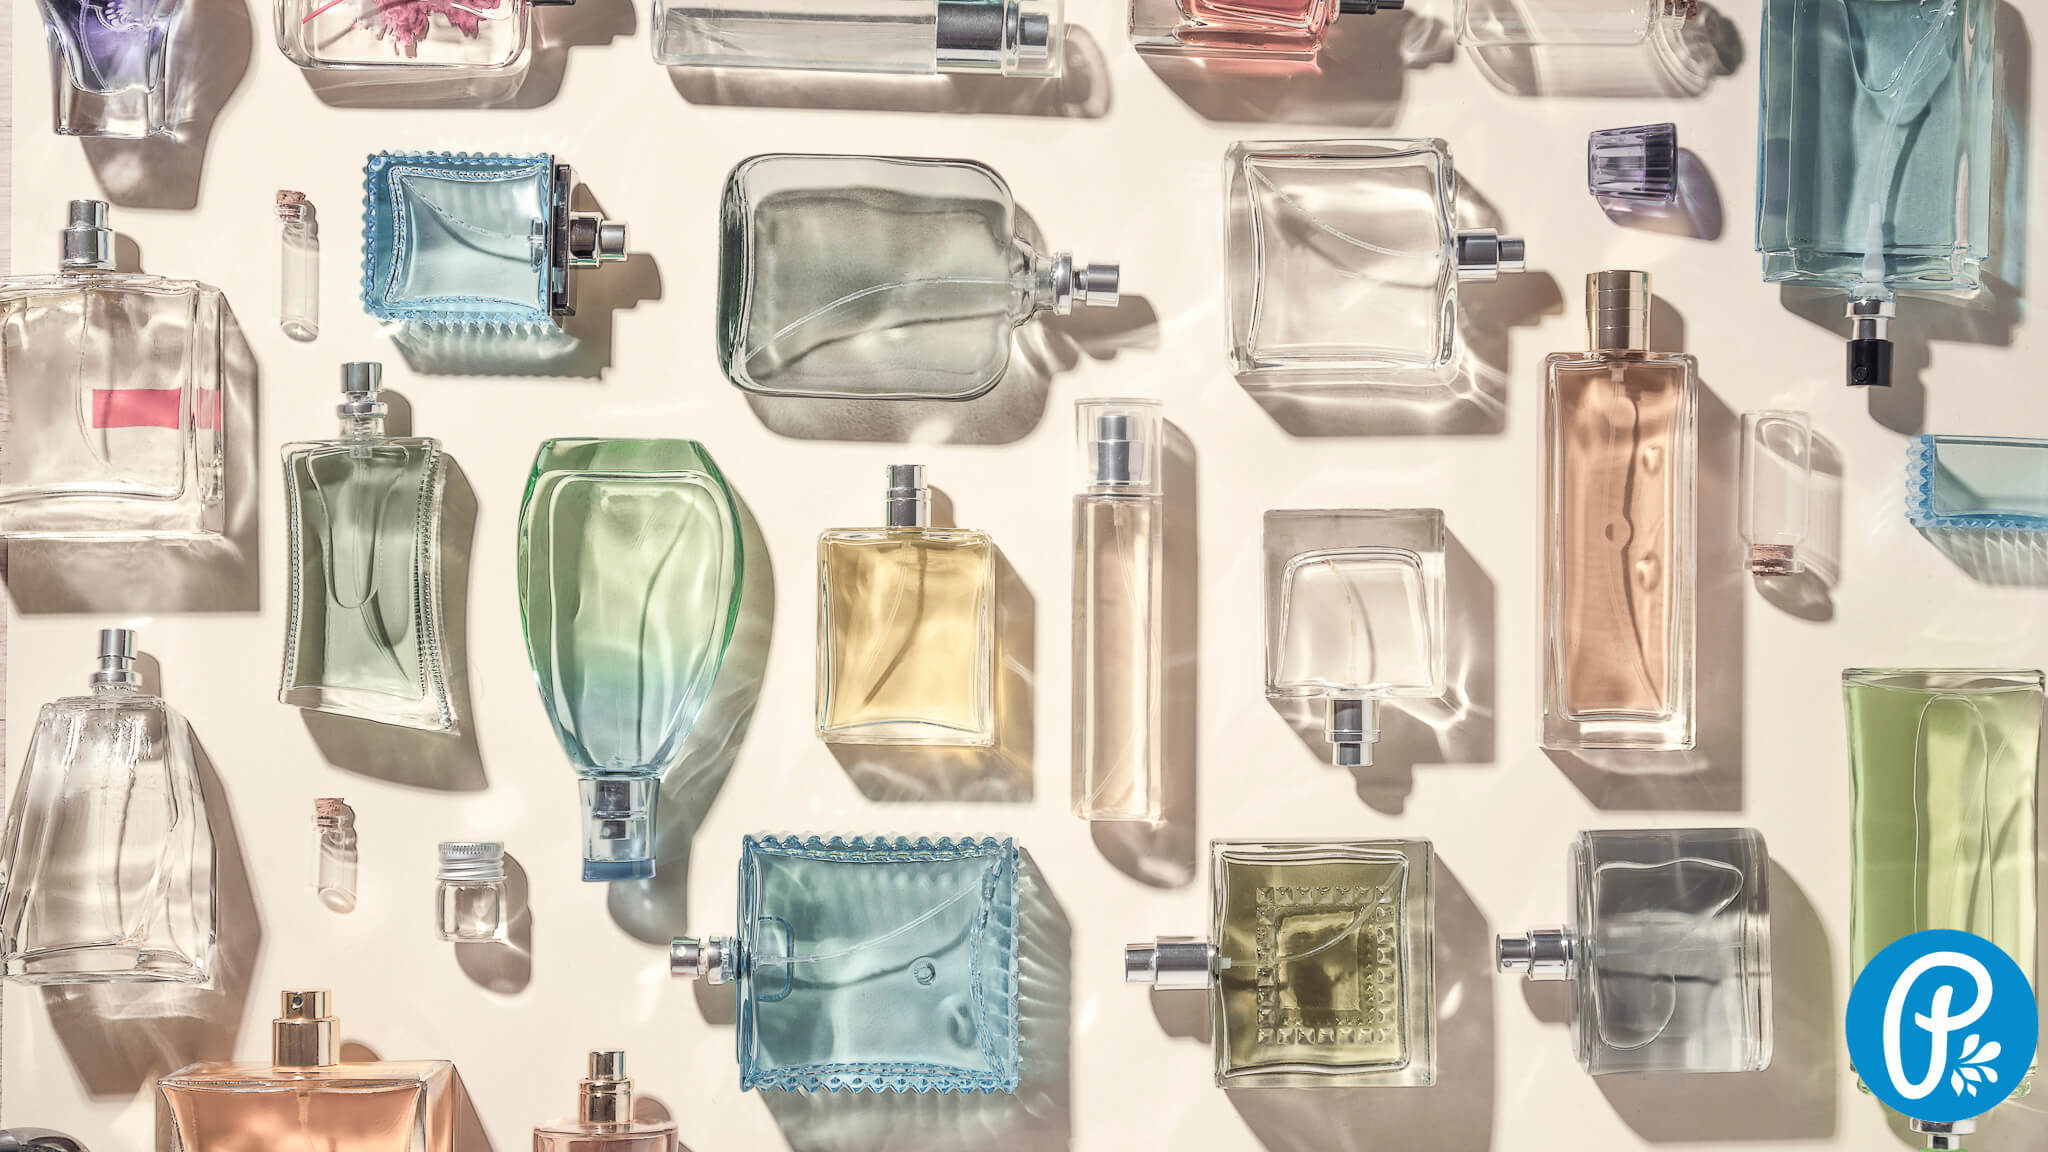 Vyzkoušejte nové krásné letní parfémy od Panakeia